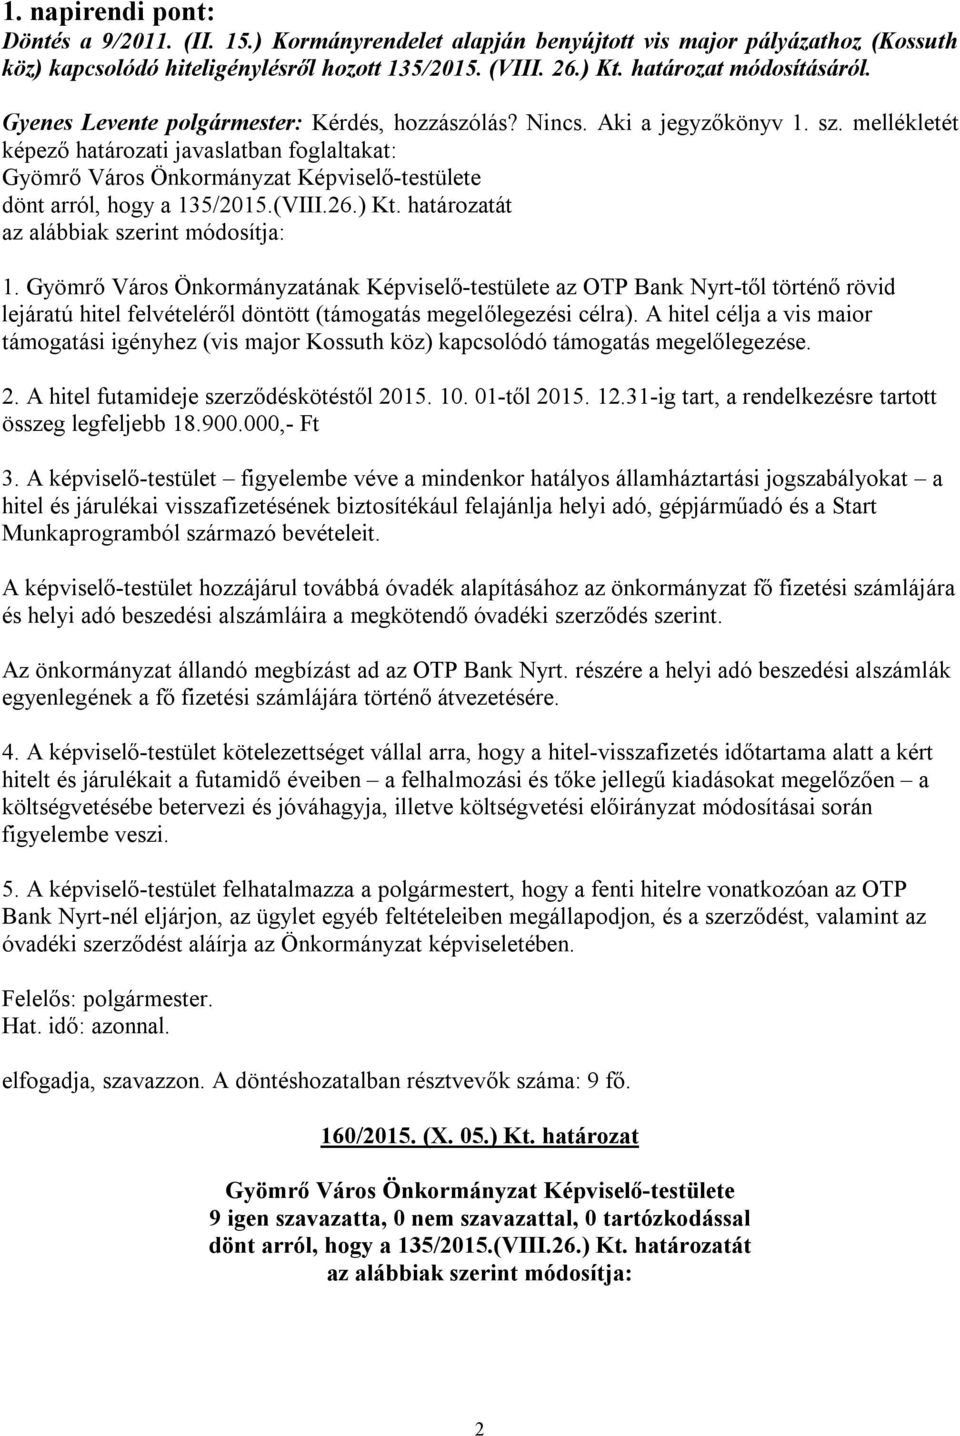 Gyömrő Város Önkormányzatának Képviselő-testülete az OTP Bank Nyrt-től történő rövid lejáratú hitel felvételéről döntött (támogatás megelőlegezési célra).